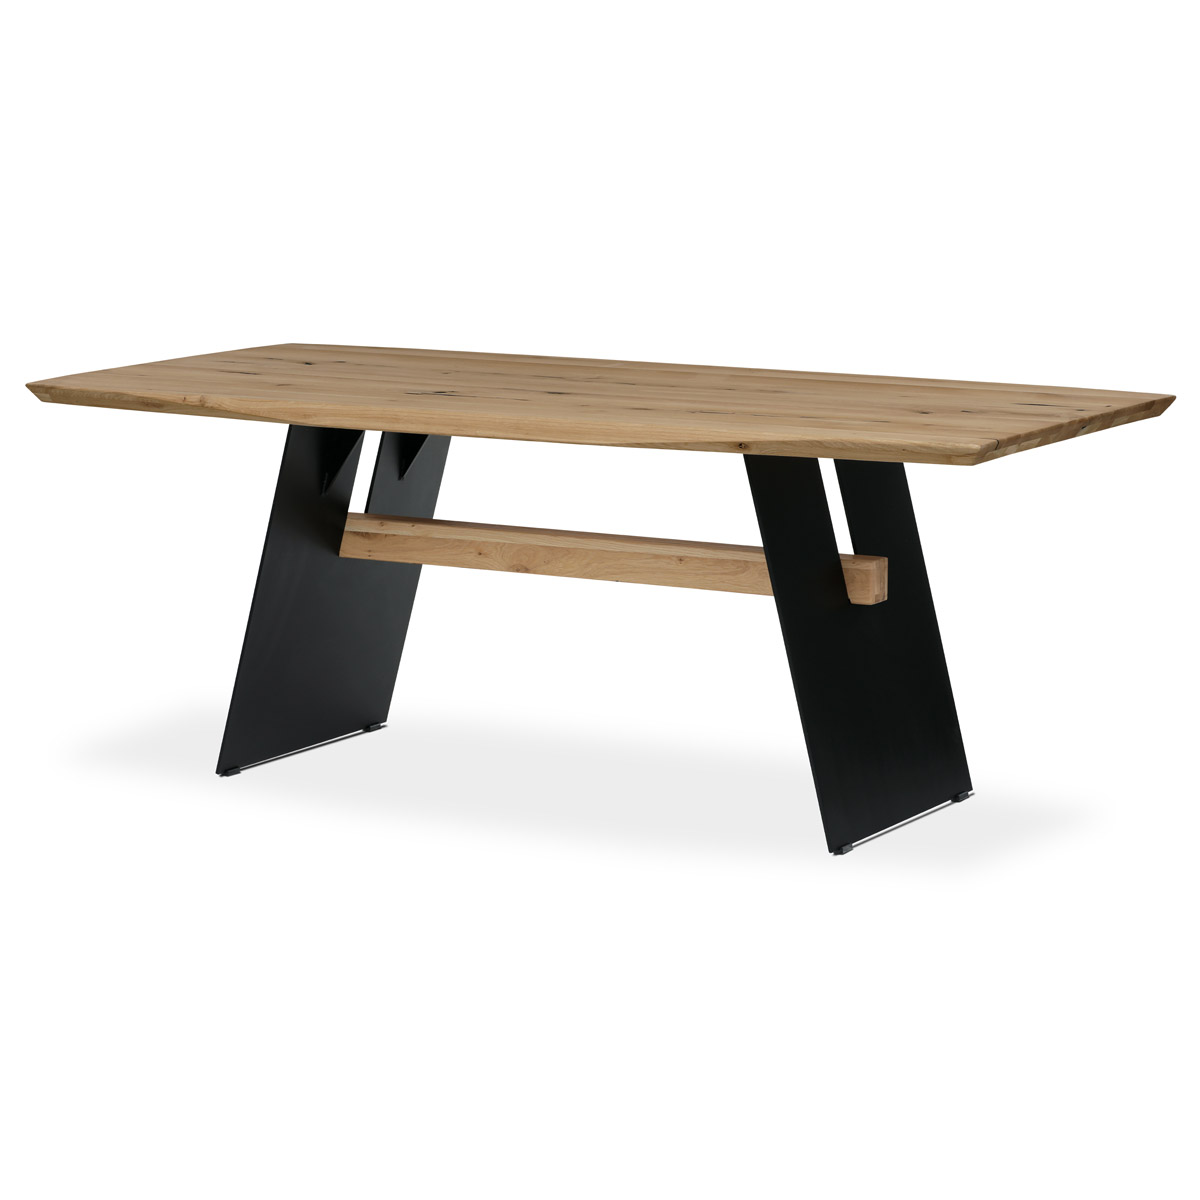 Stůl jídelní, 200x100 cm,masiv dub, zkosená hrana, kovová noha, černý lak